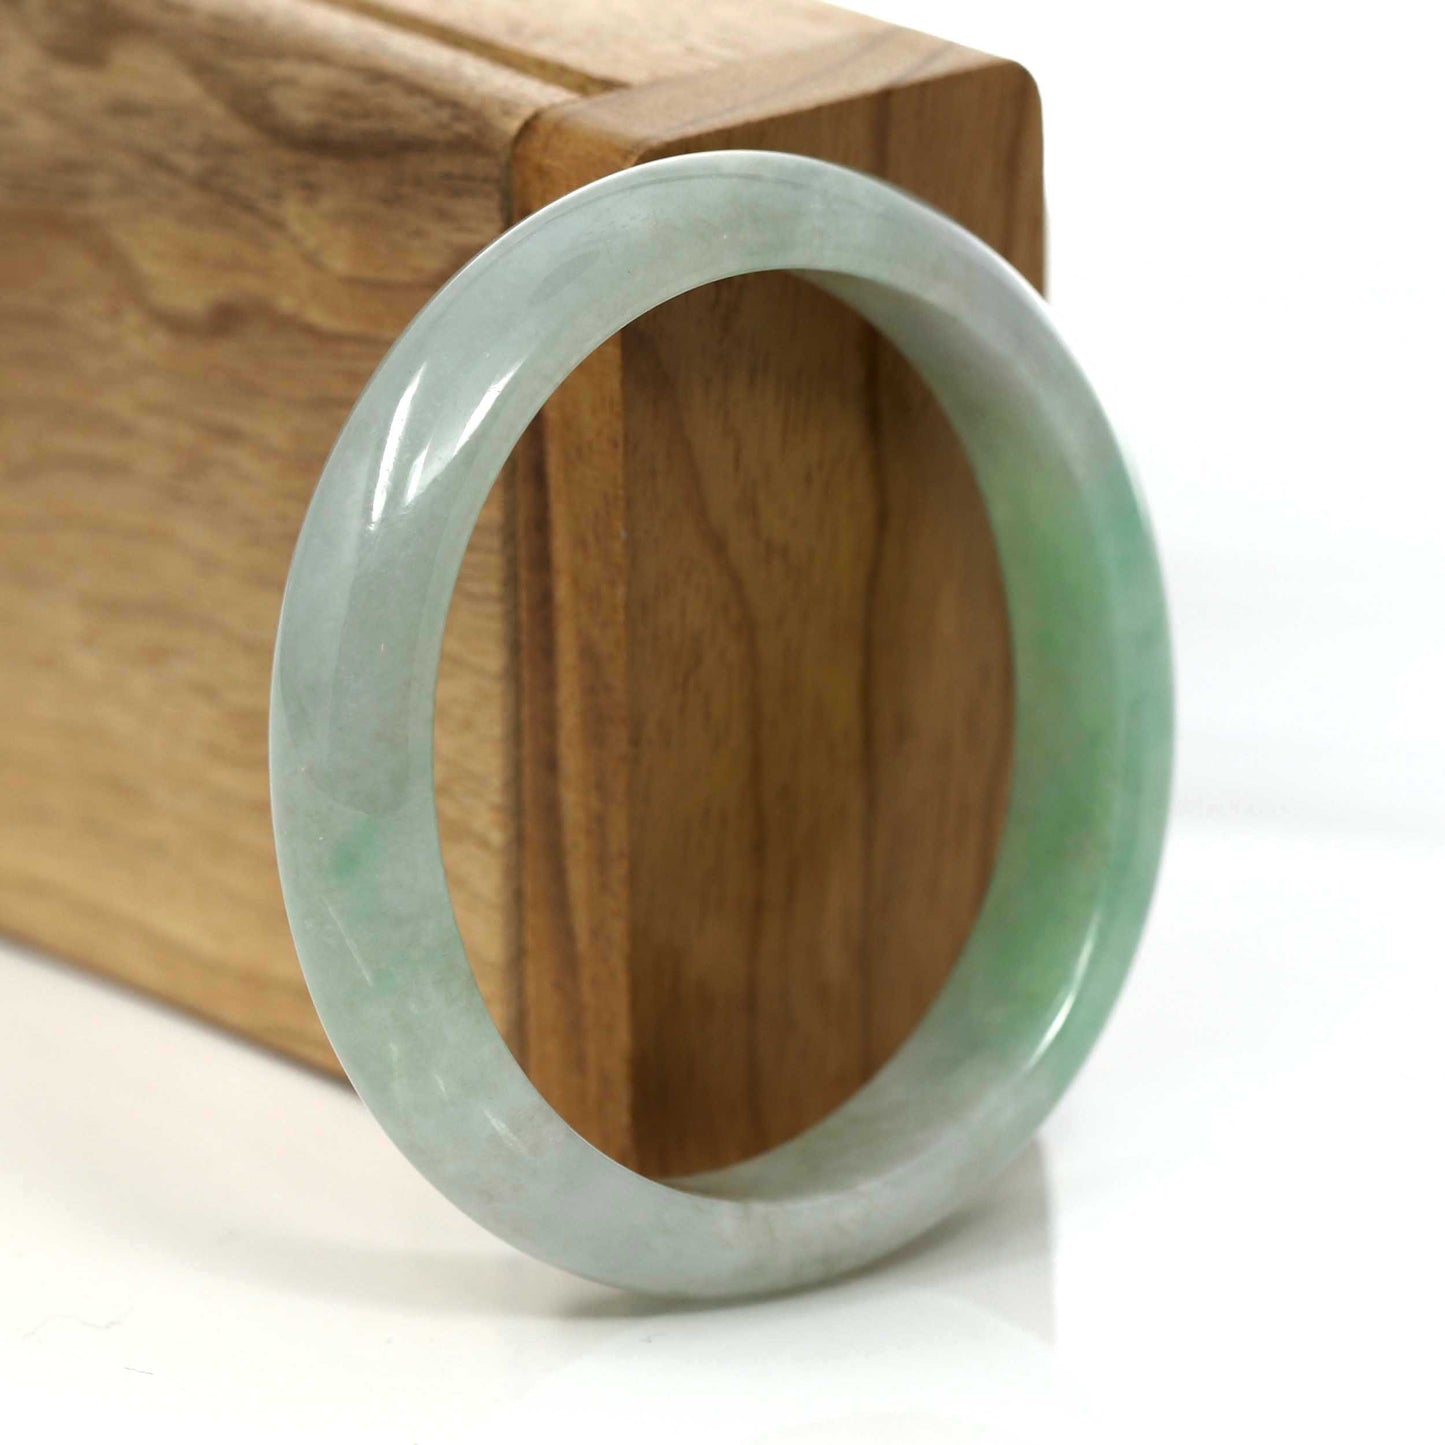 RealJade® Co. Jadeite Jade Bangle Bracelet RealJade Genuine Burmese Green Jadeite Jade Oval Bangle (53.53 mm) #357